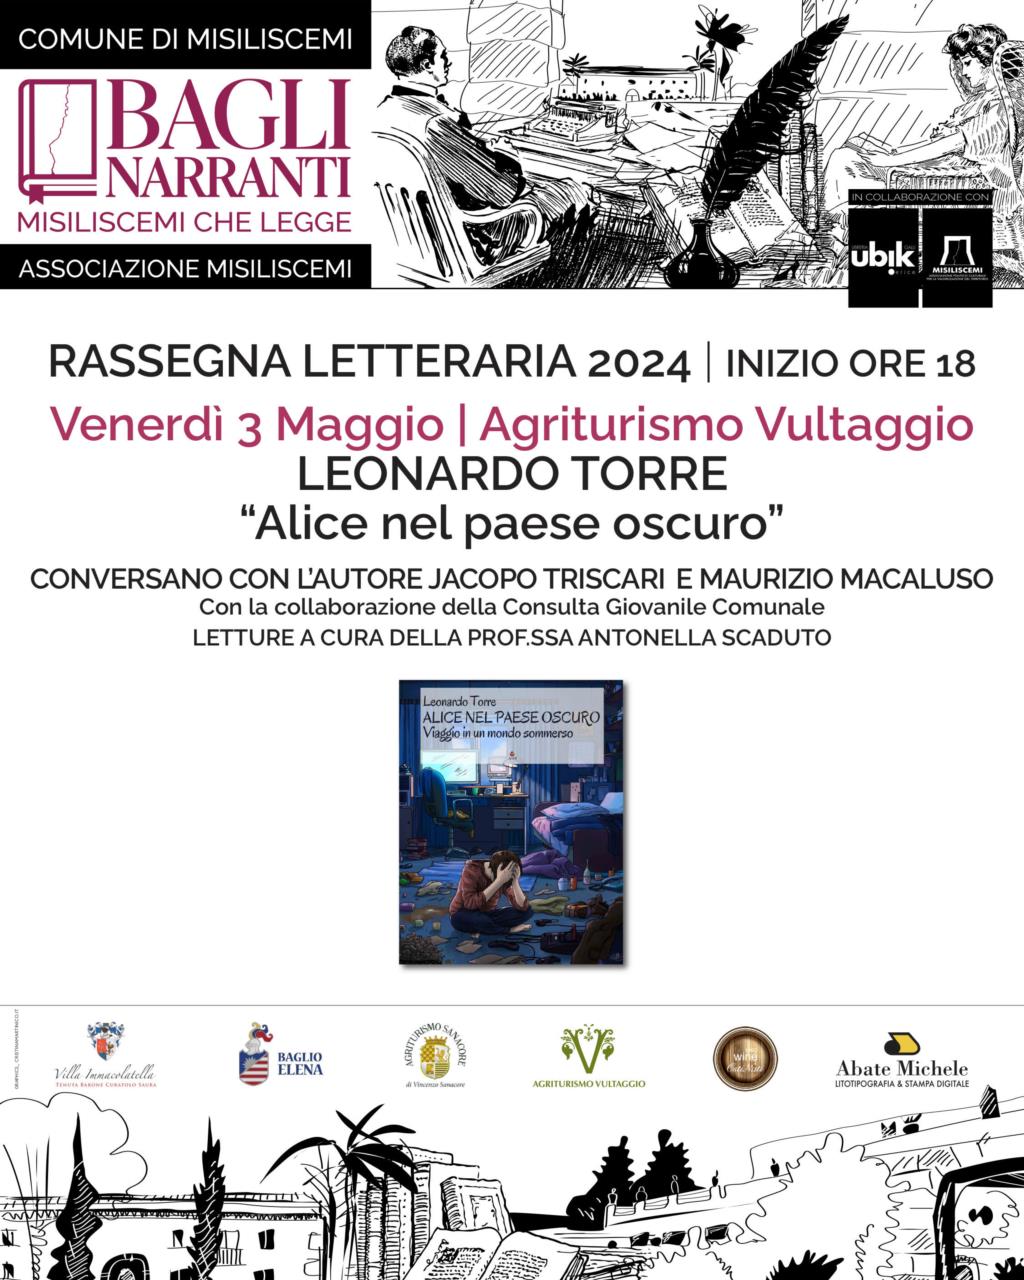 'Bagli Narranti', venerdì la presentazione del libro 'Alice nel paese oscuro' di Leonardo Torre